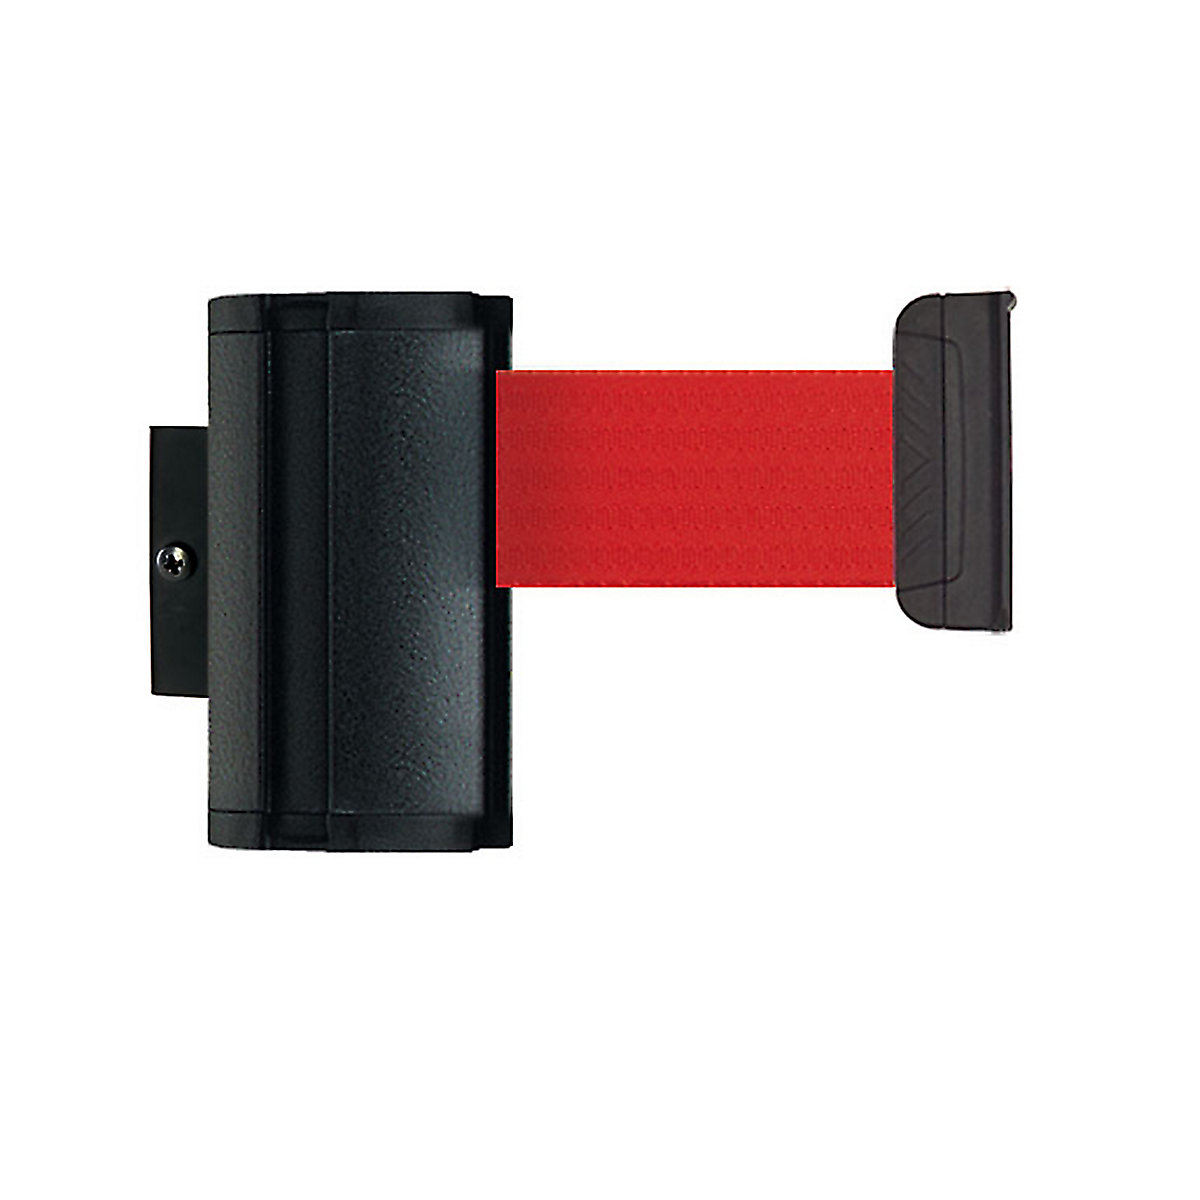 Cassete de cinta Wall Mount, extração máx. da cinta 2300 mm, cor da cinta vermelho-8